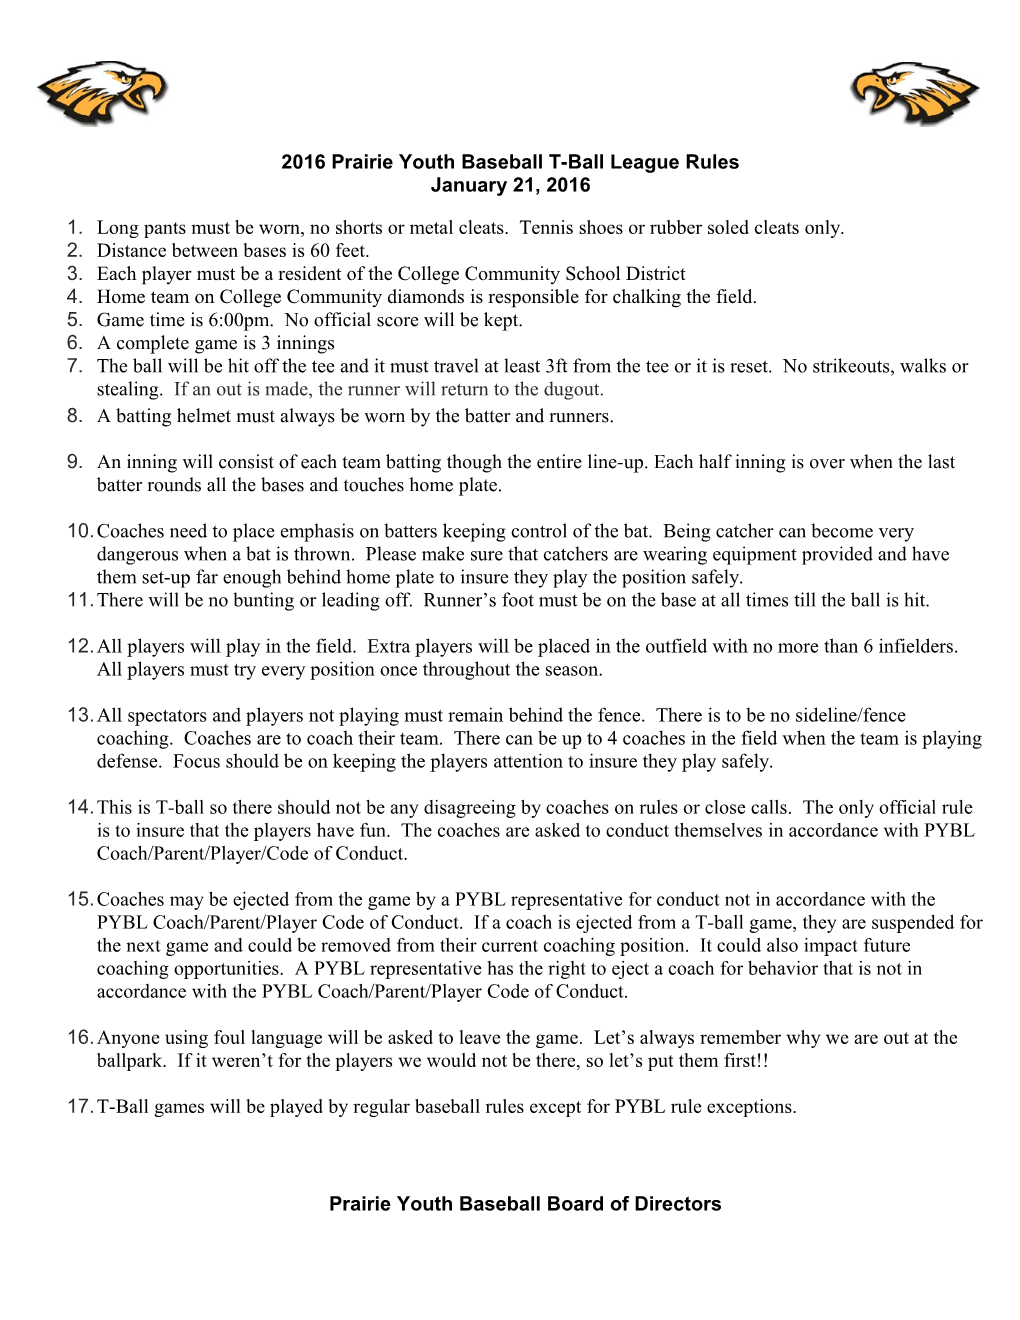 2012 Prairie Youth Baseball League Rules